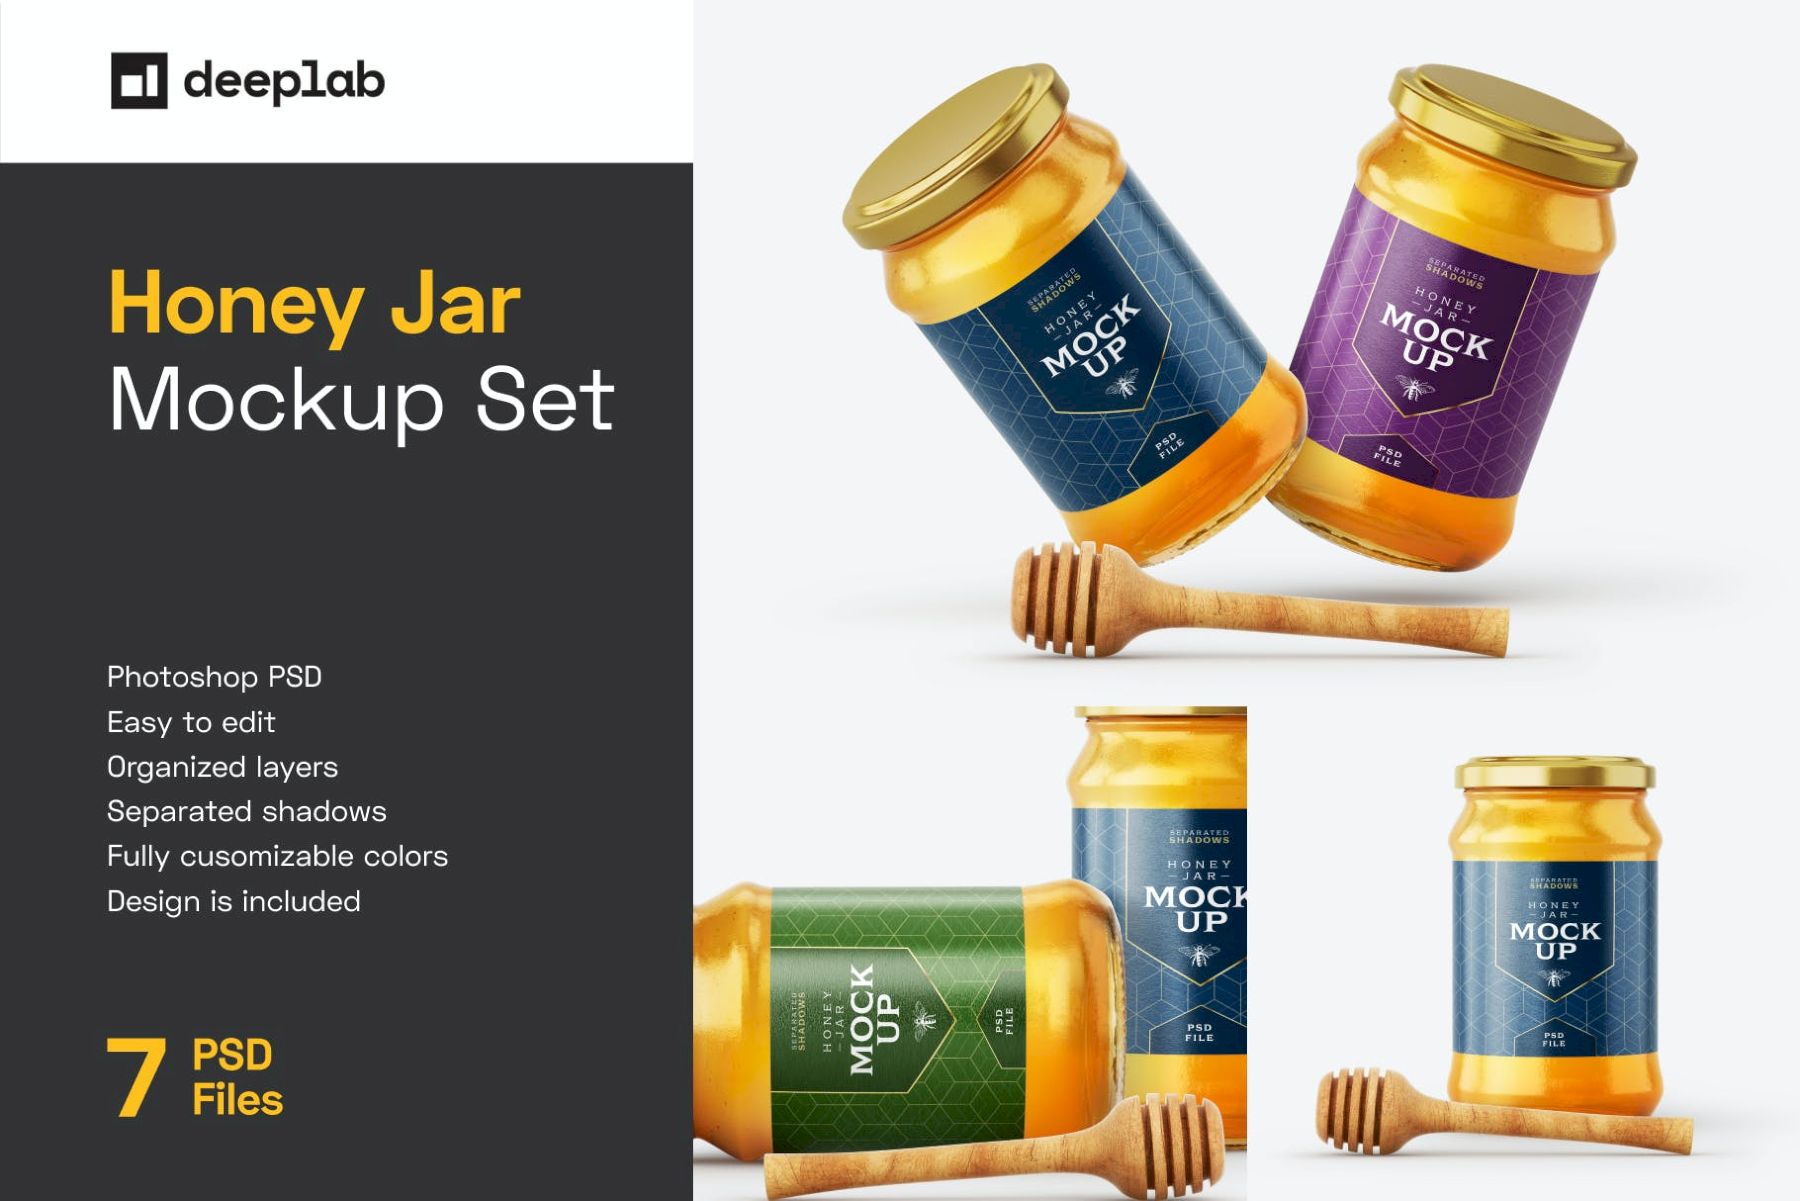 带北斗的蜂蜜罐样机套装 Honey Jar Mockup Set With Dipper